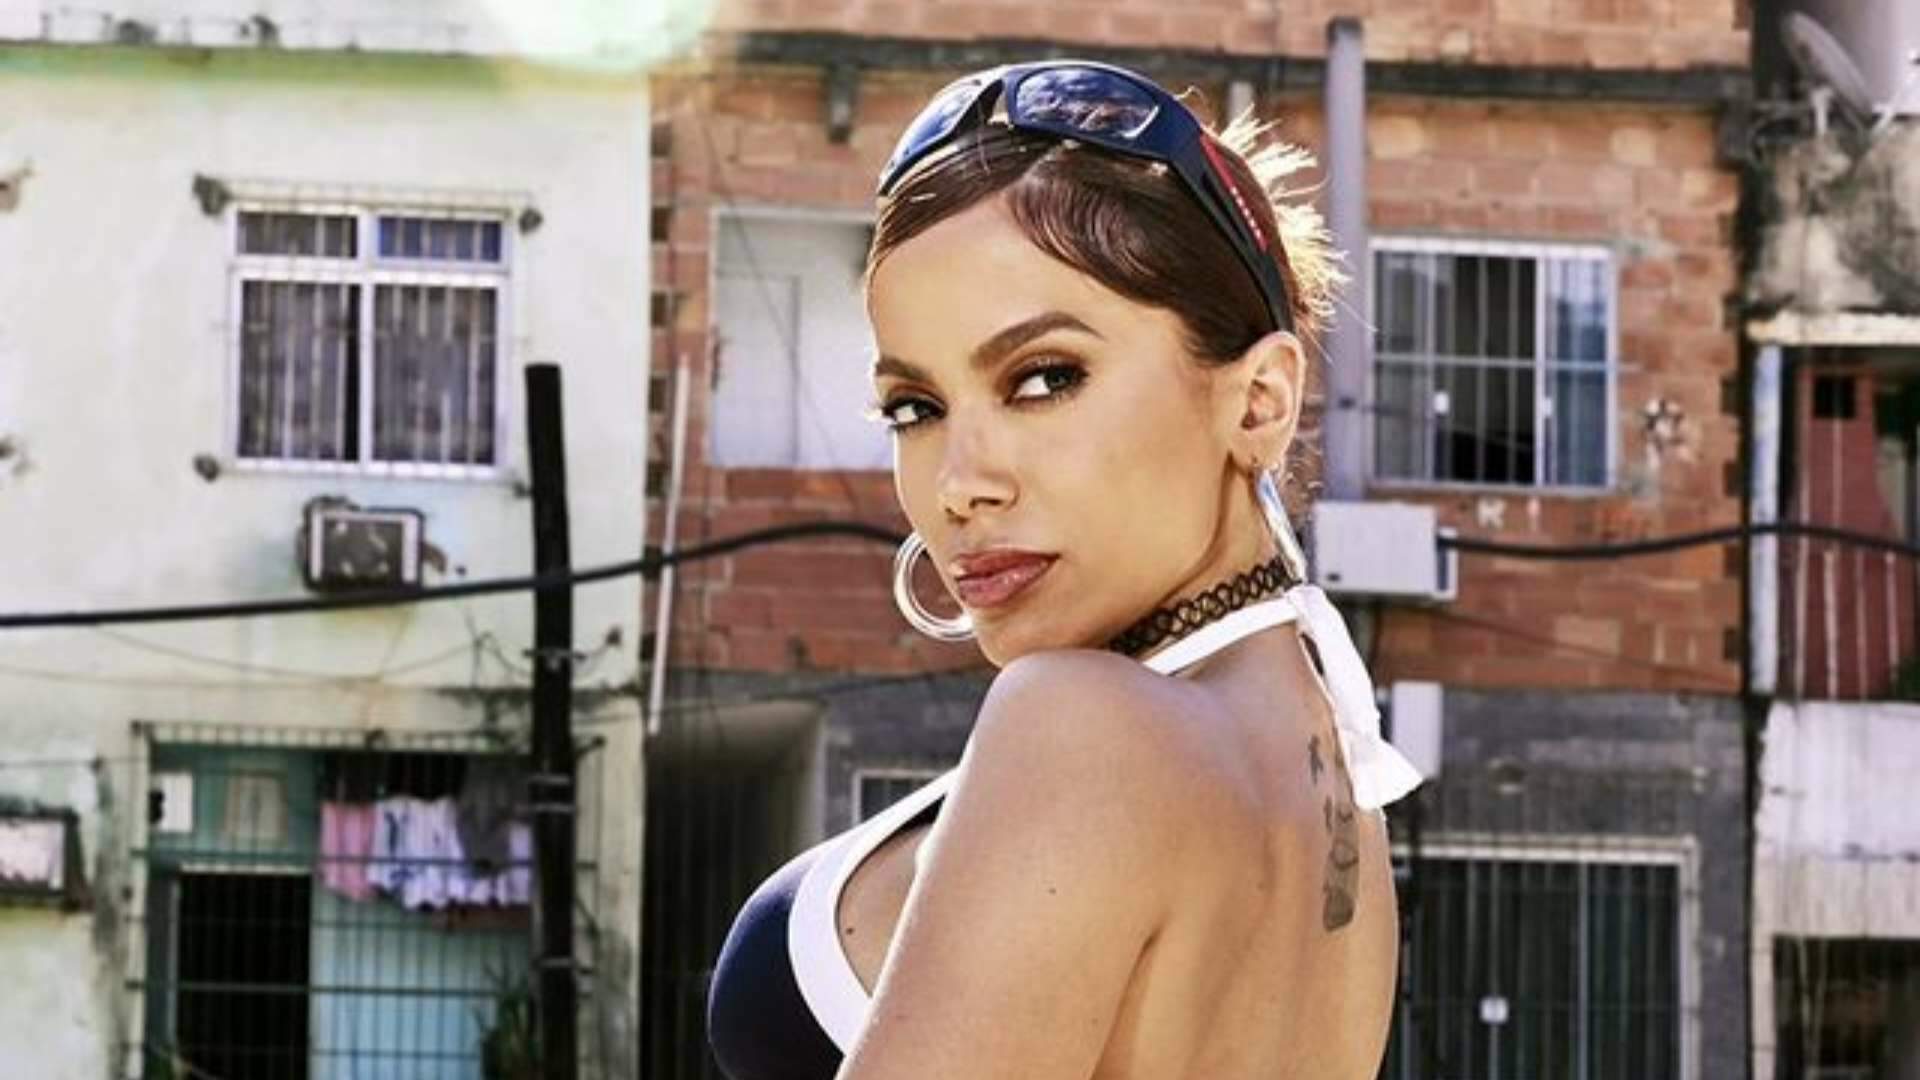 De surpresa, Anitta anuncia estreia de novo projeto musical; o que os fãs podem esperar desse trabalho inédito da Poderosa? - Metropolitana FM